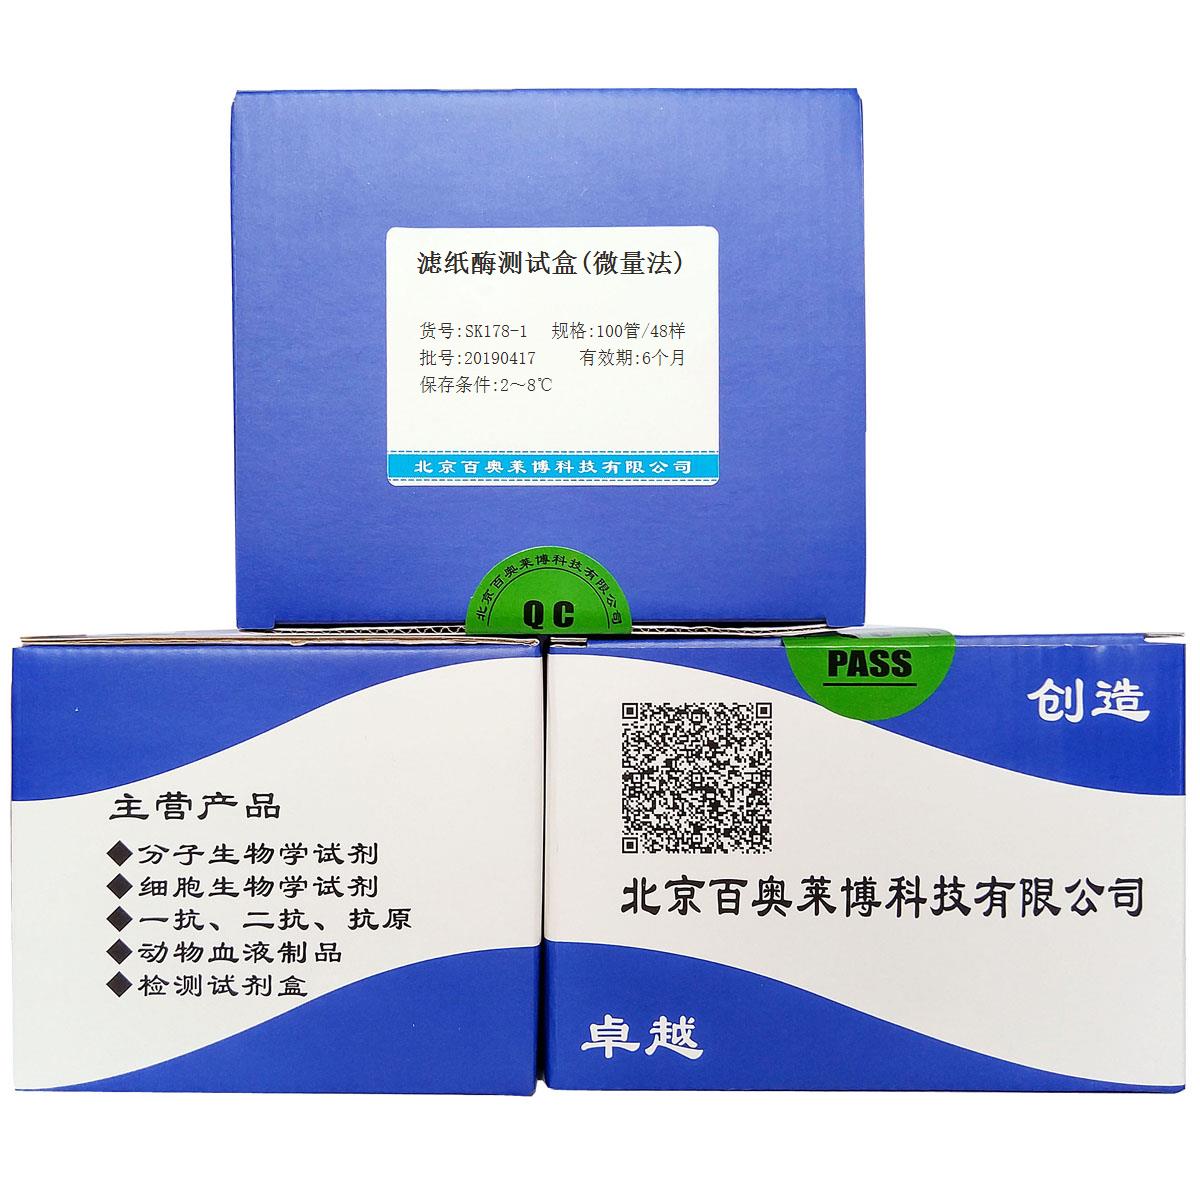 滤纸酶测试盒(微量法)北京现货